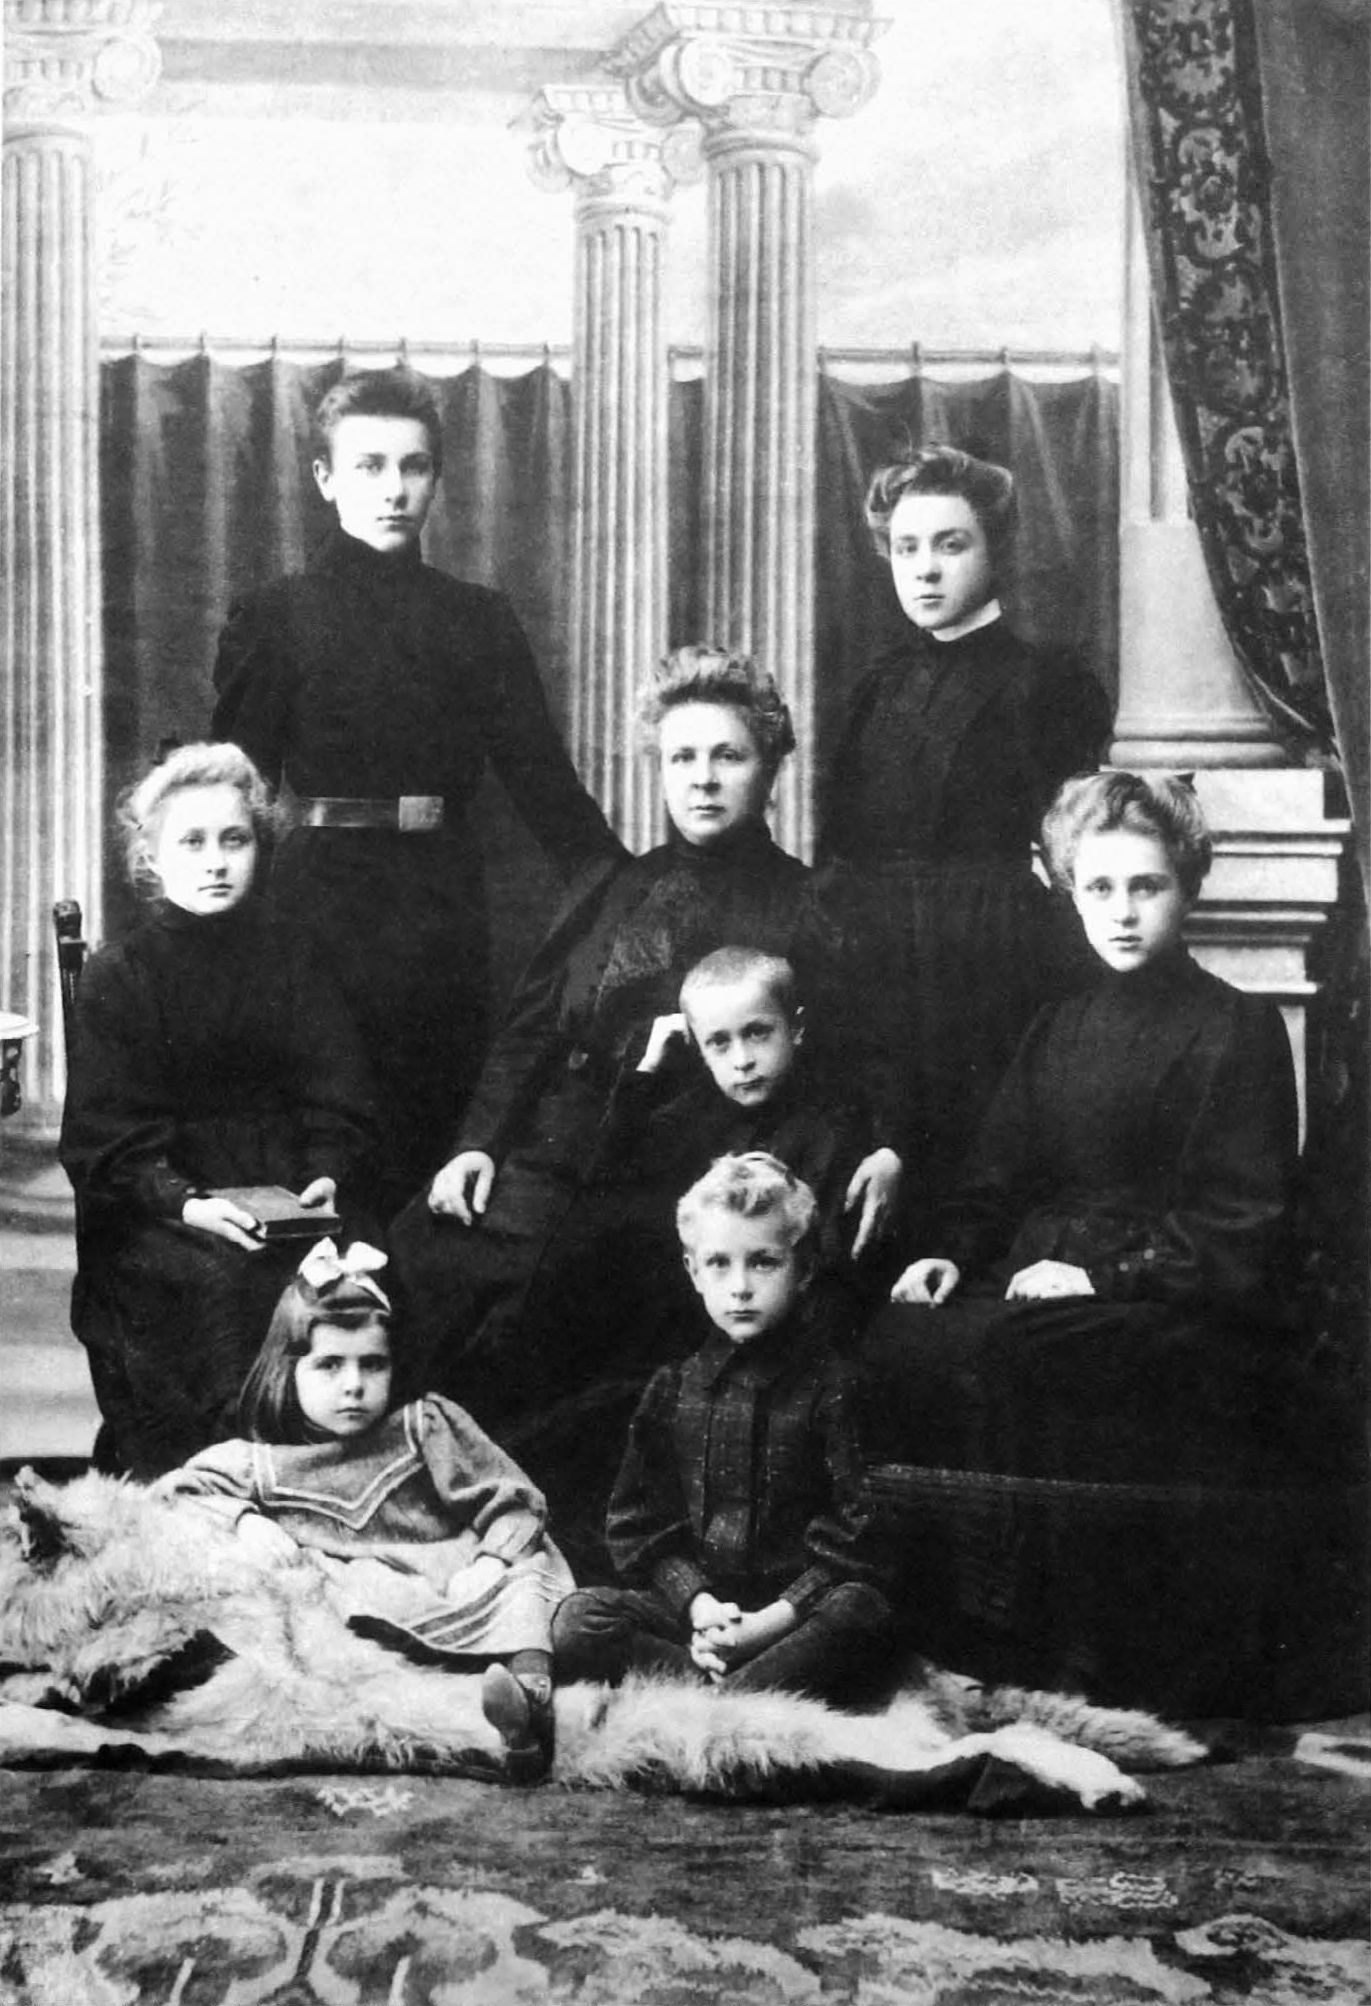 Вся семья в трауре после смерти отца: (слева направо, сверху вниз) Миша, Вера, Варя, мать с Колей, Надя; внизу сидят Леля и Ваня